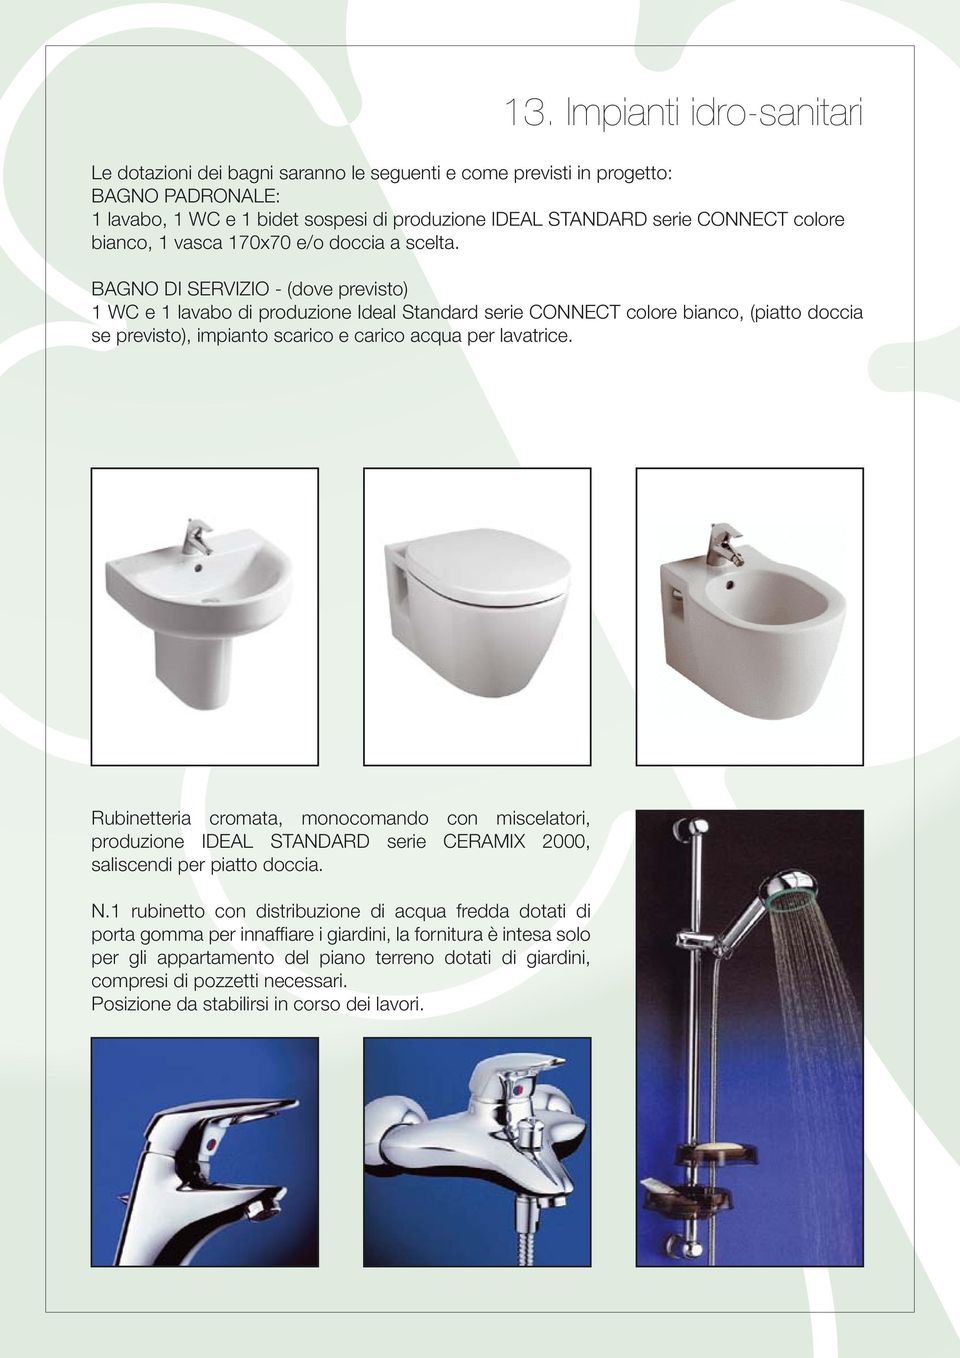 BAGNO DI SERVIZIO - (dove previsto) 1 WC e 1 lavabo di produzione Ideal Standard serie CONNECT colore bianco, (piatto doccia se previsto), impianto scarico e carico acqua per lavatrice.